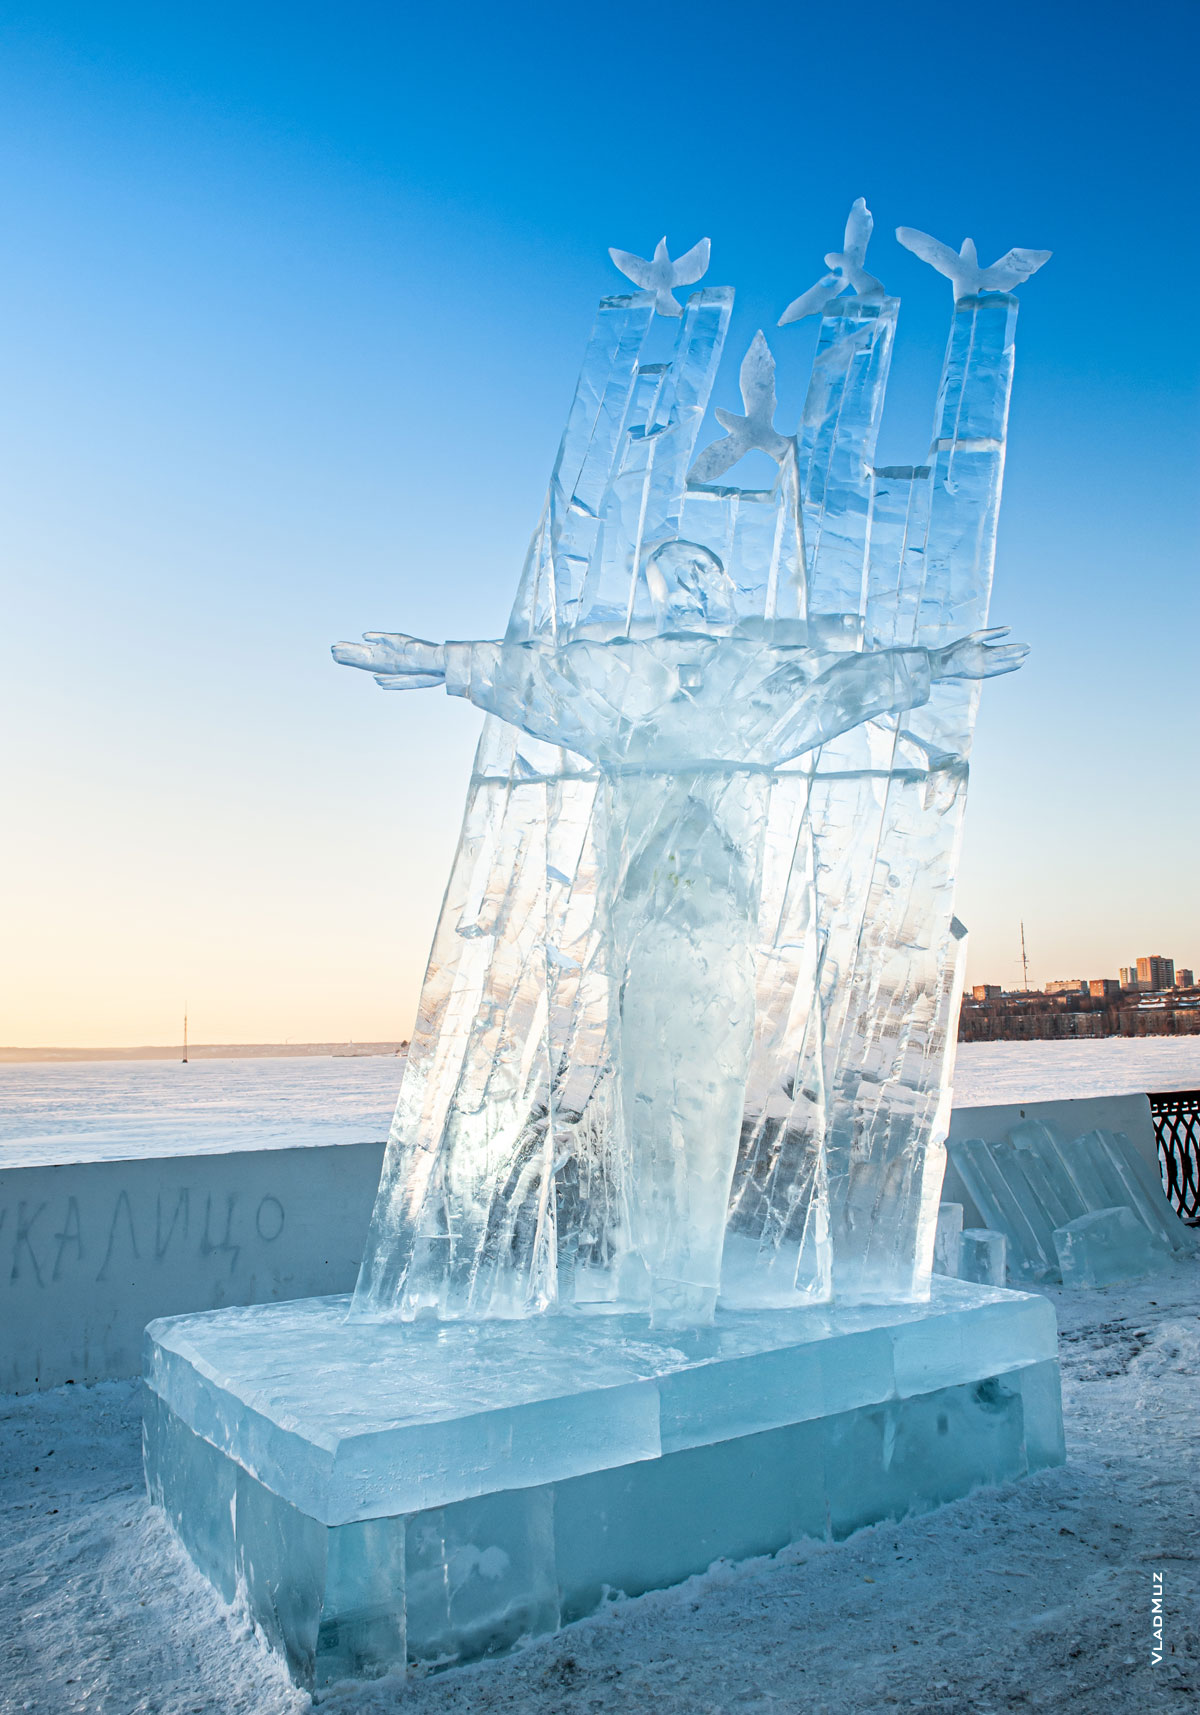 Ижевск, фестиваль «Удмуртский лед 2018»: фото ледовой скульптуры «И мира вам, и любви»